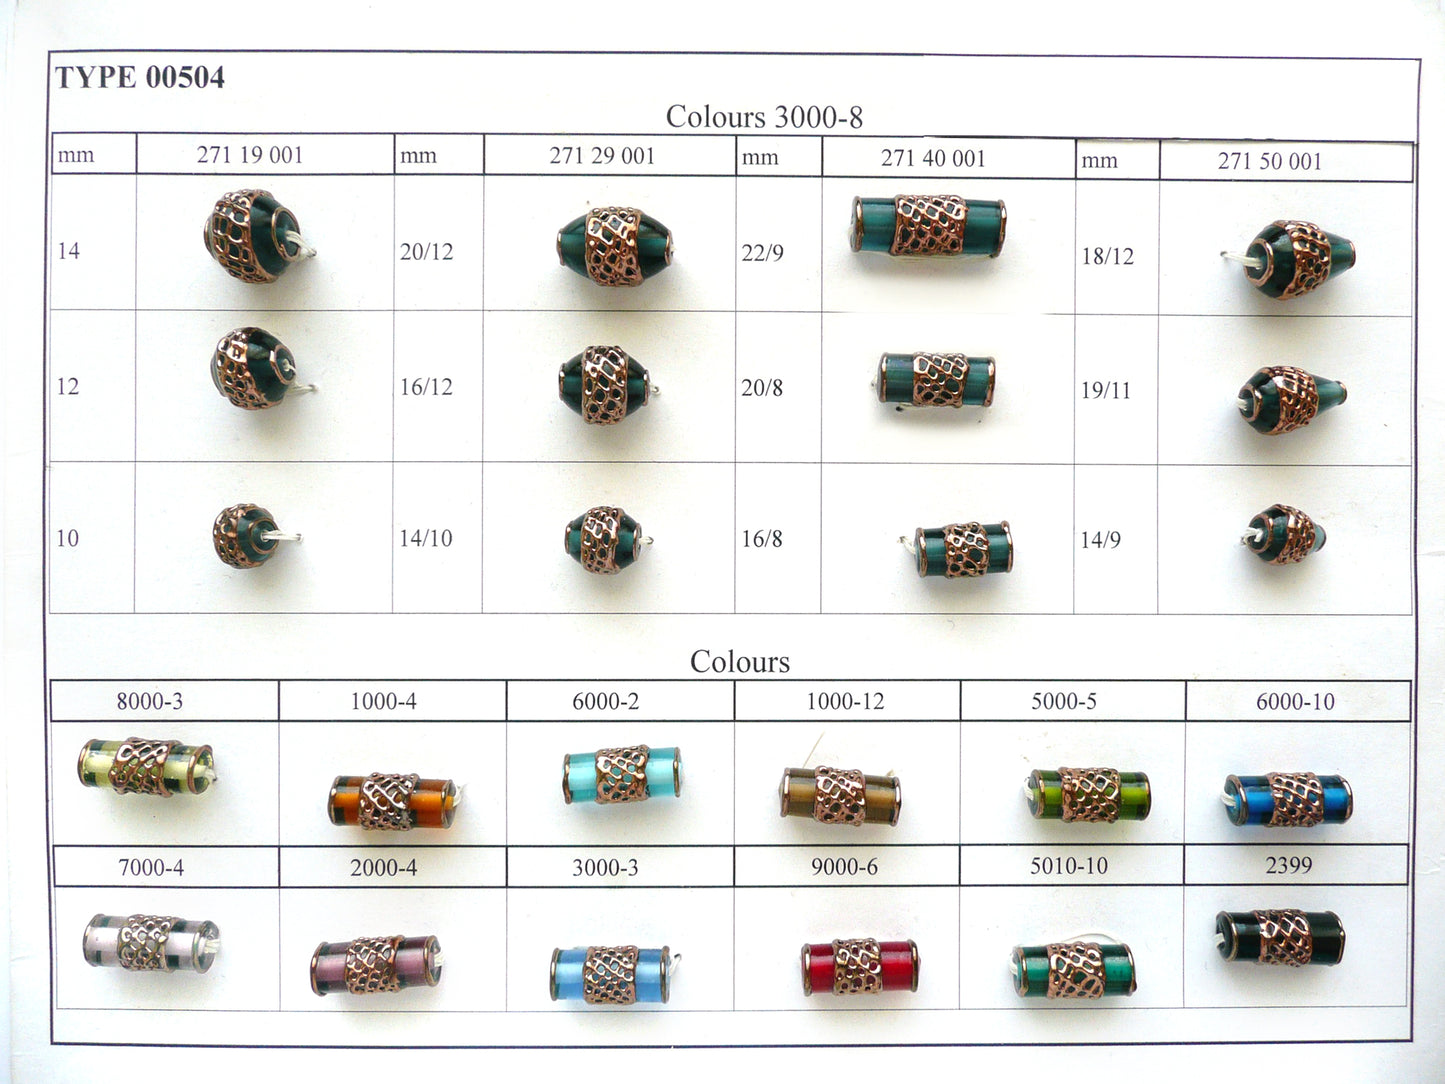 30 颗灯珠 504 / 圆筒 (271-40-001)，手工制作，宝仕奥莎玻璃，捷克共和国